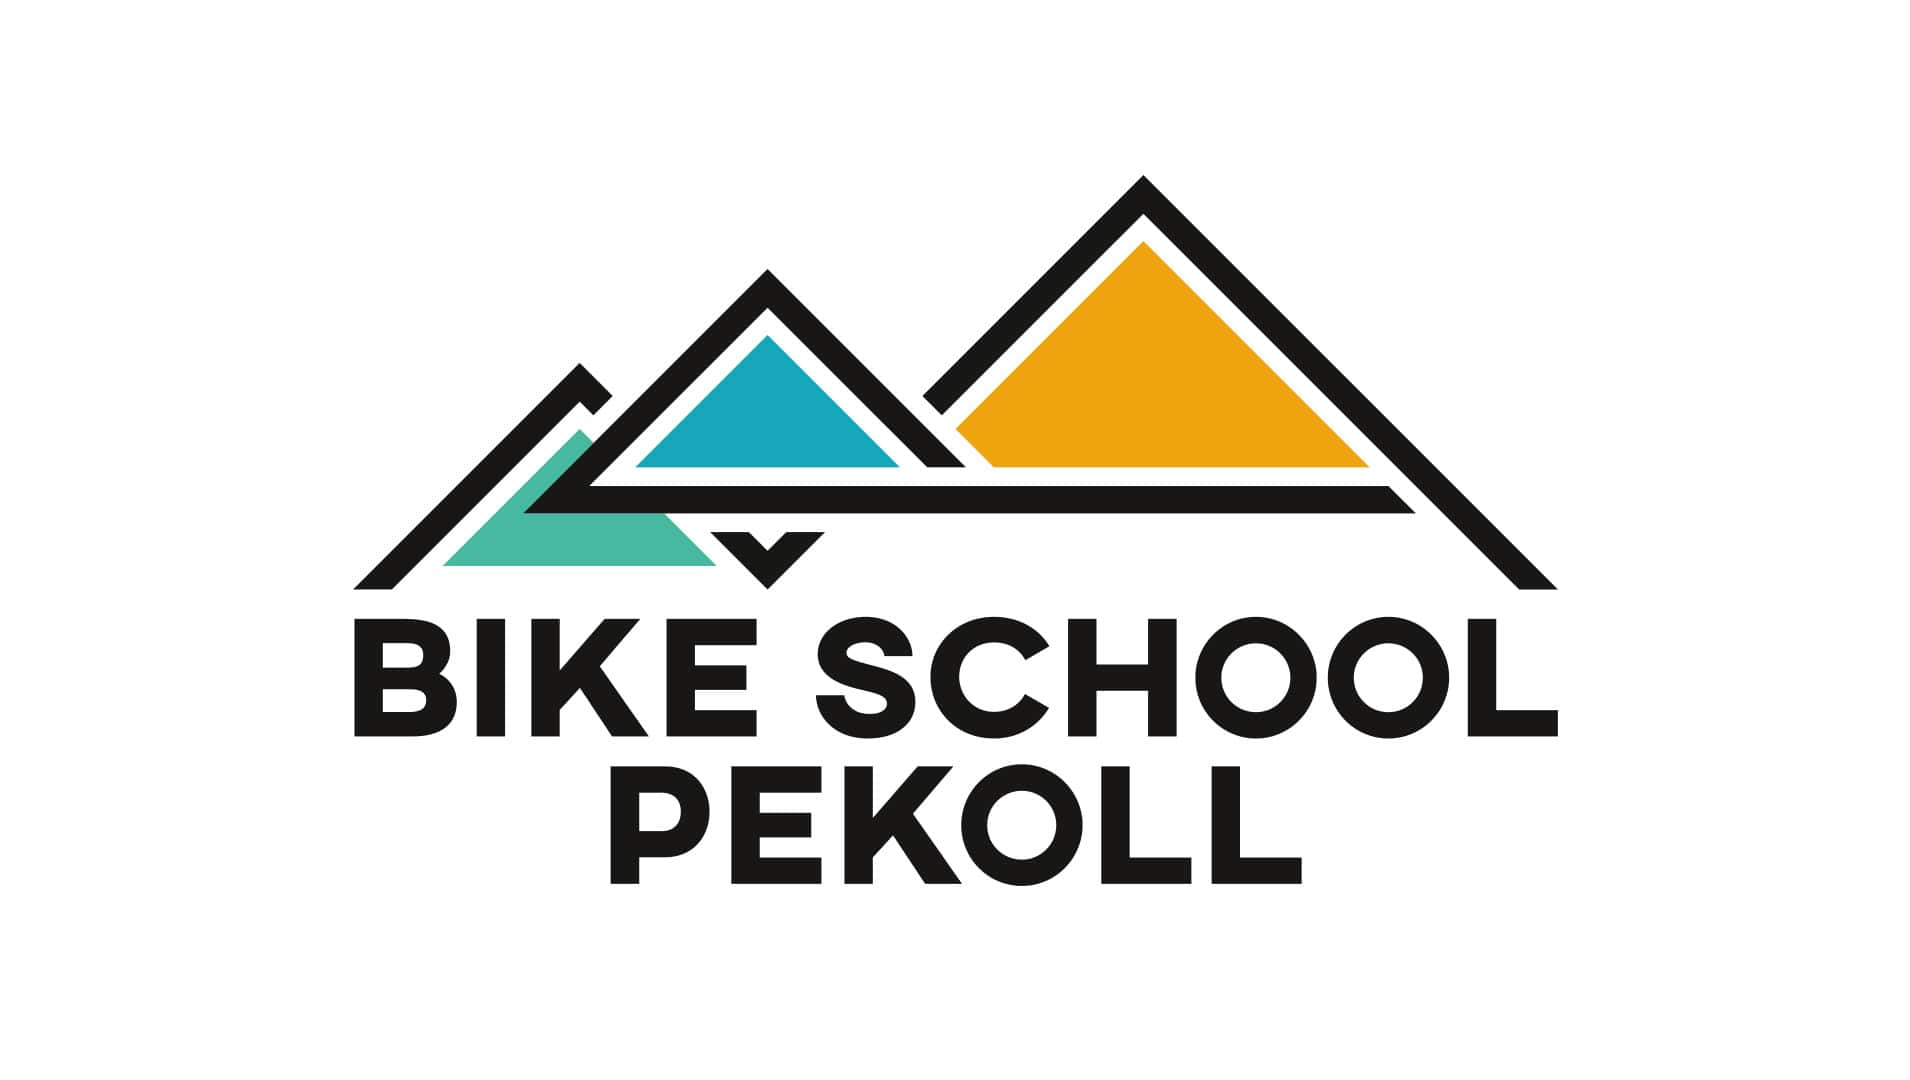 BIKE SCHOOL PEKOLL Logo